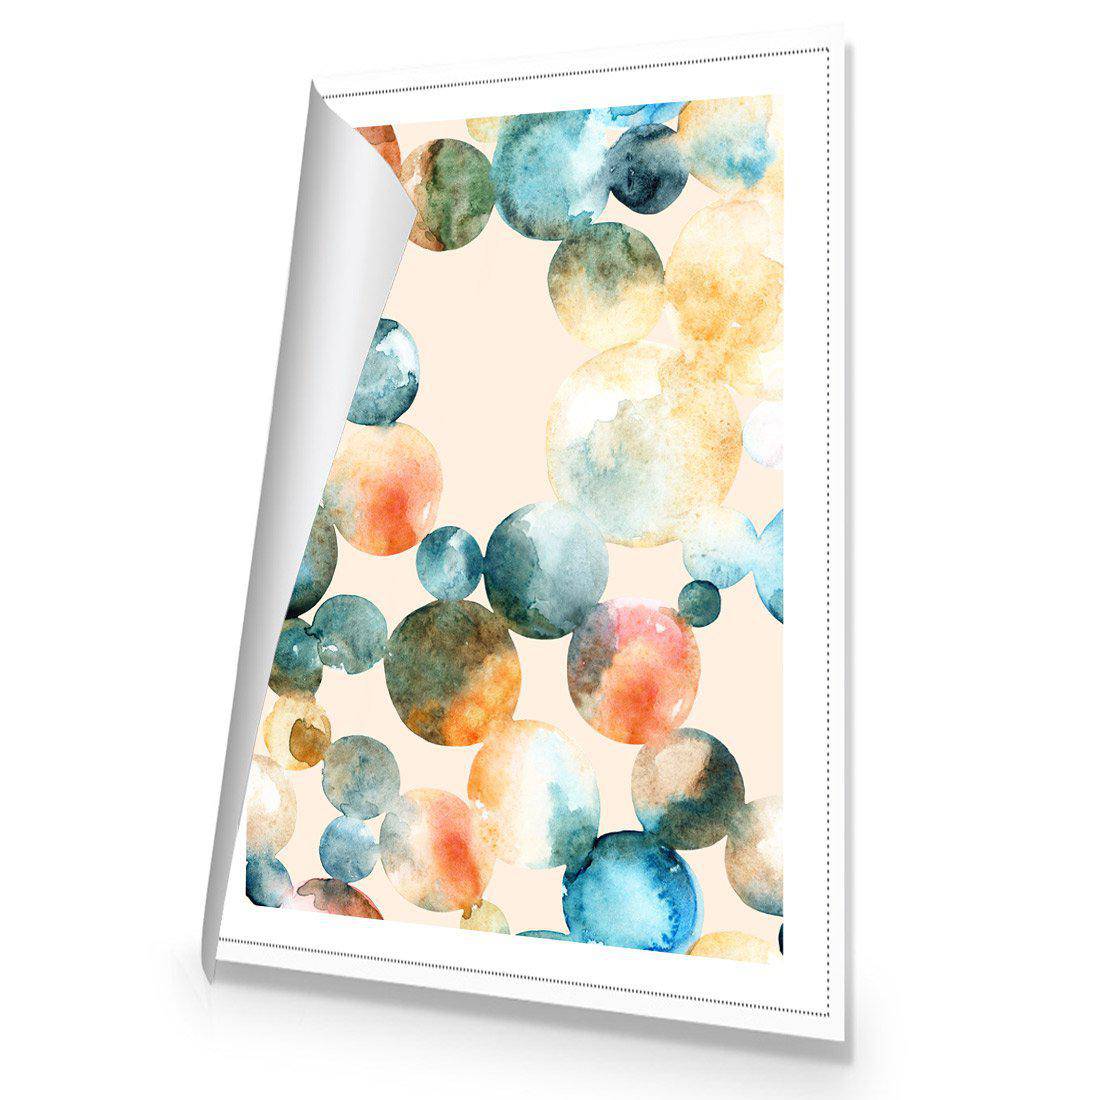 Bouncing Bubbles Canvas Art-Canvas-Wall Art Designs-45x30cm-Rolled Canvas-Wall Art Designs